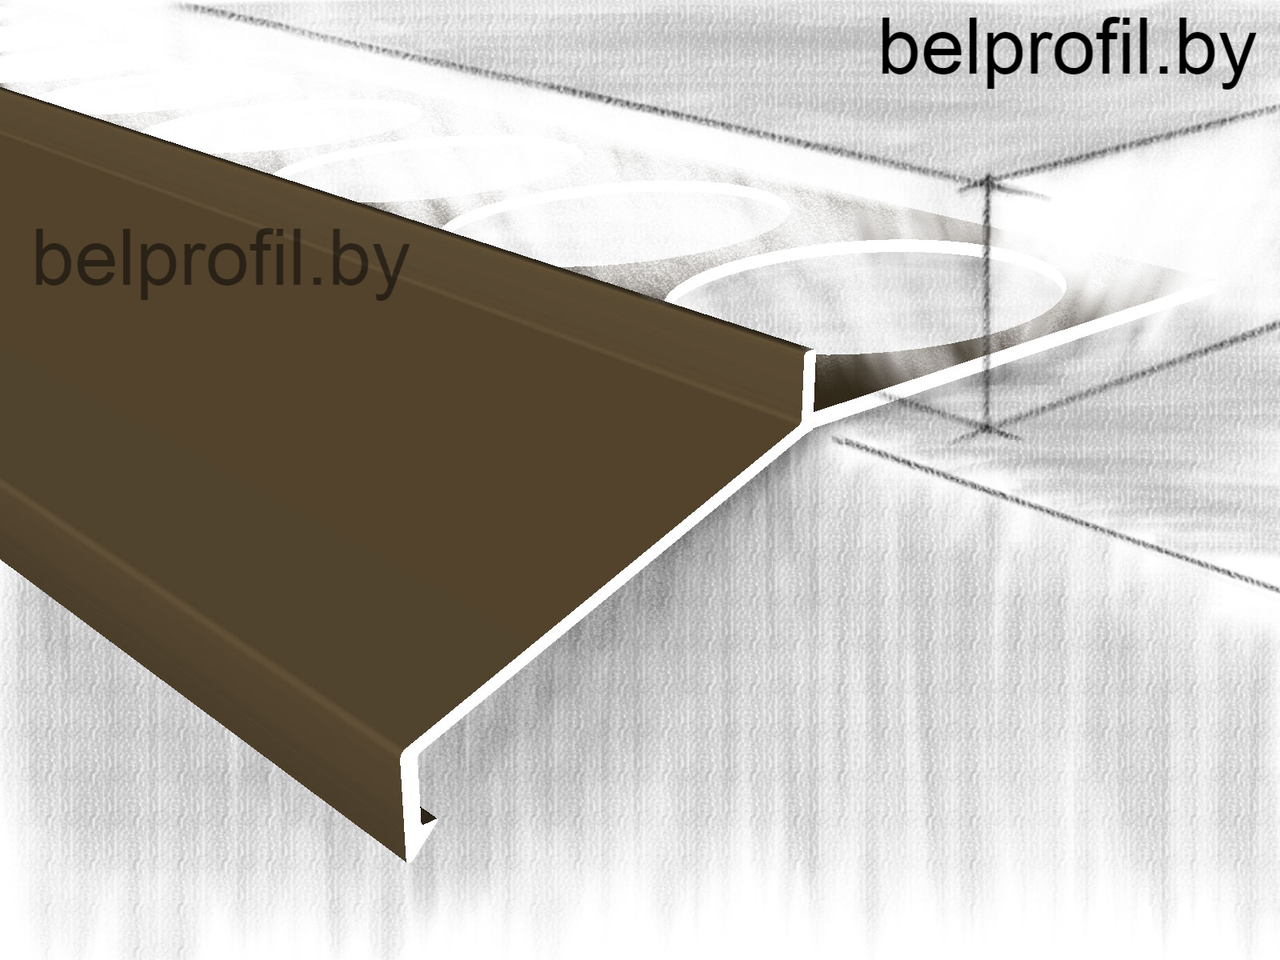 Профиль-отлив для террас и балконов макси, анод.бронза, фото 1